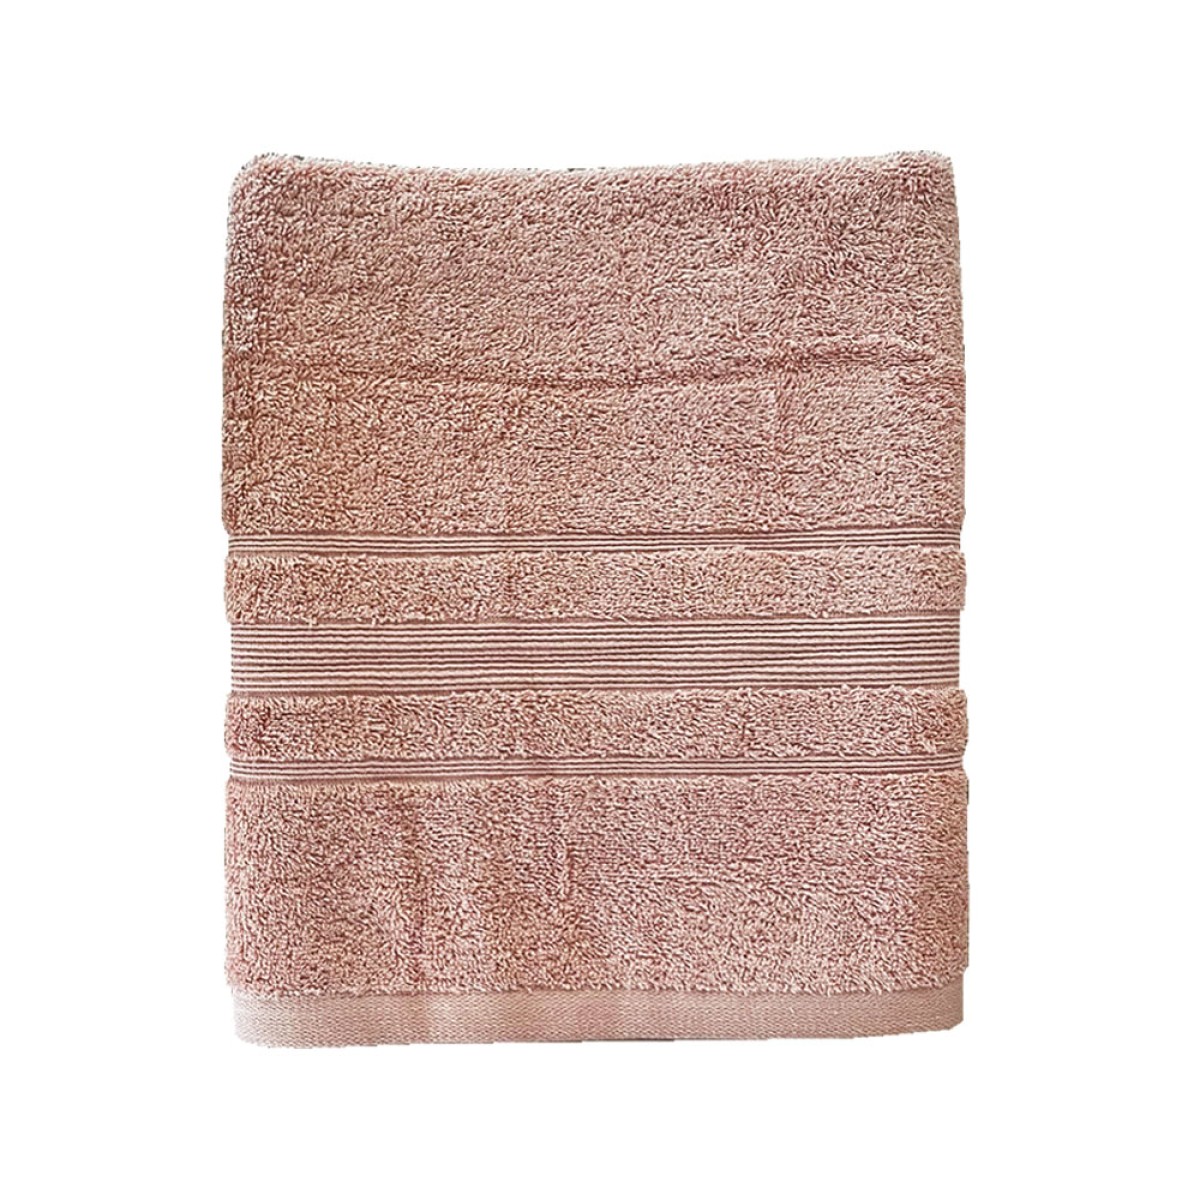 Πετσέτα Σώματος 550grs (70x140) 100% Βαμβάκι με μπορντούρα με ανάγλυφο σχέδιο Sidirela Line Pink Nude E-3203-3